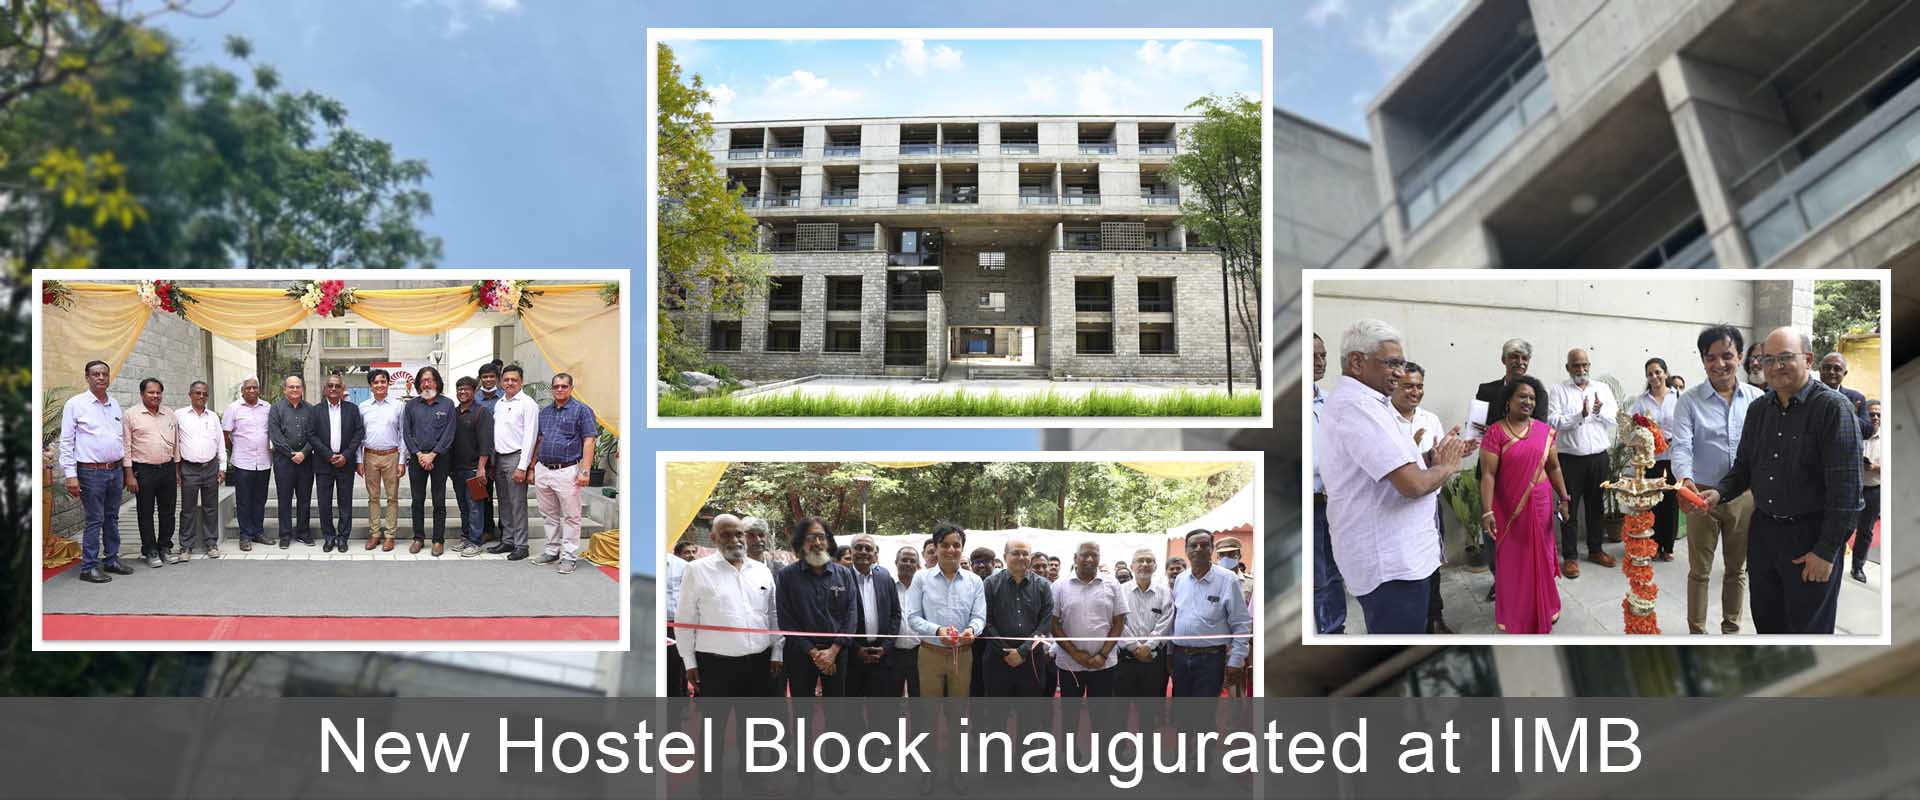 New Hostel Block inaugurated at IIMB